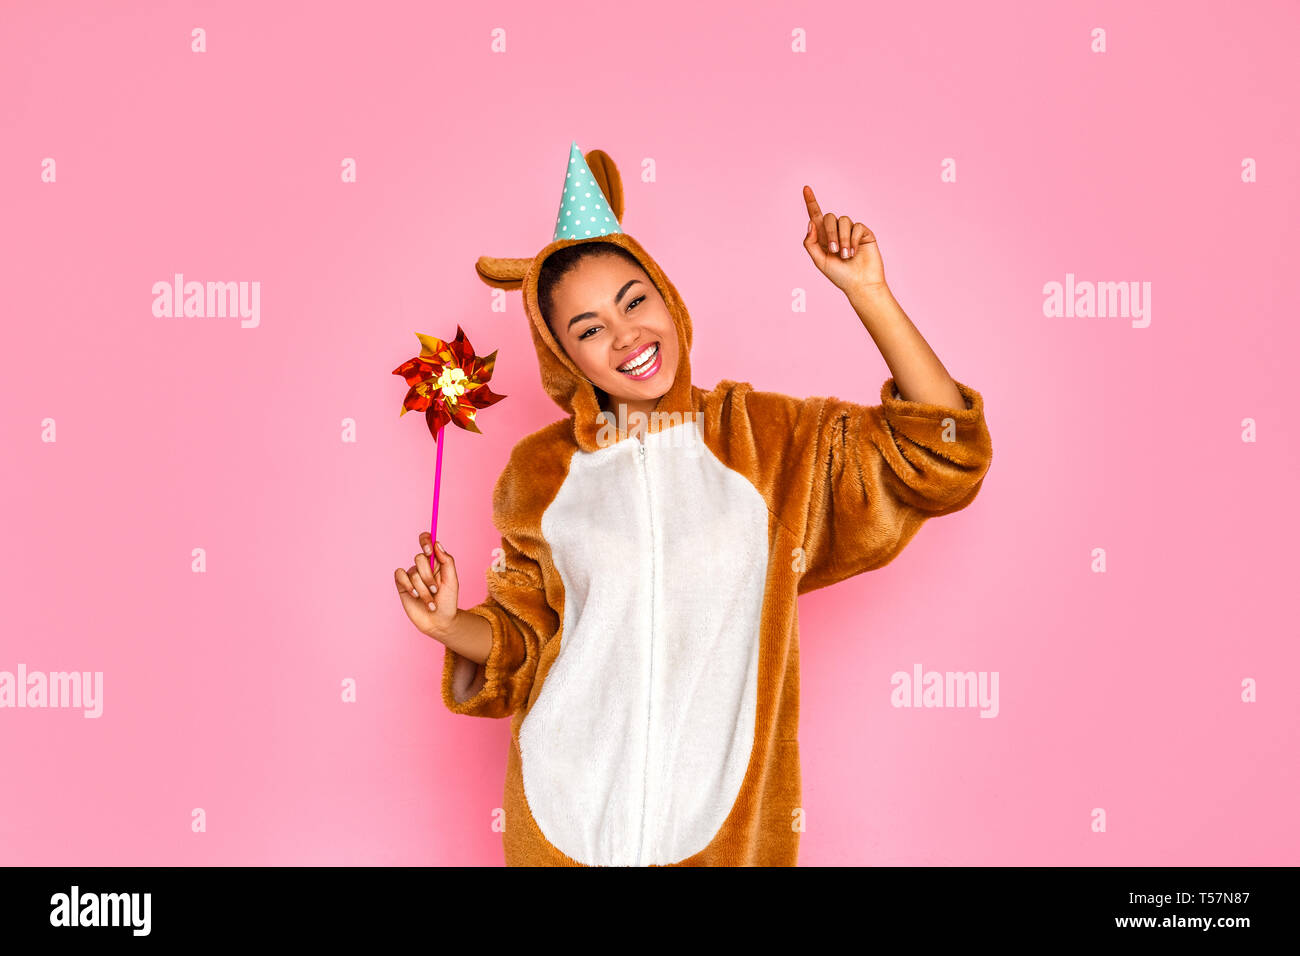 Jeune femme en bunny kigurumi wearing party hat standing isolé sur fond rose holding pinwheel posant à l'appareil photo au space pinting up smiling che Banque D'Images